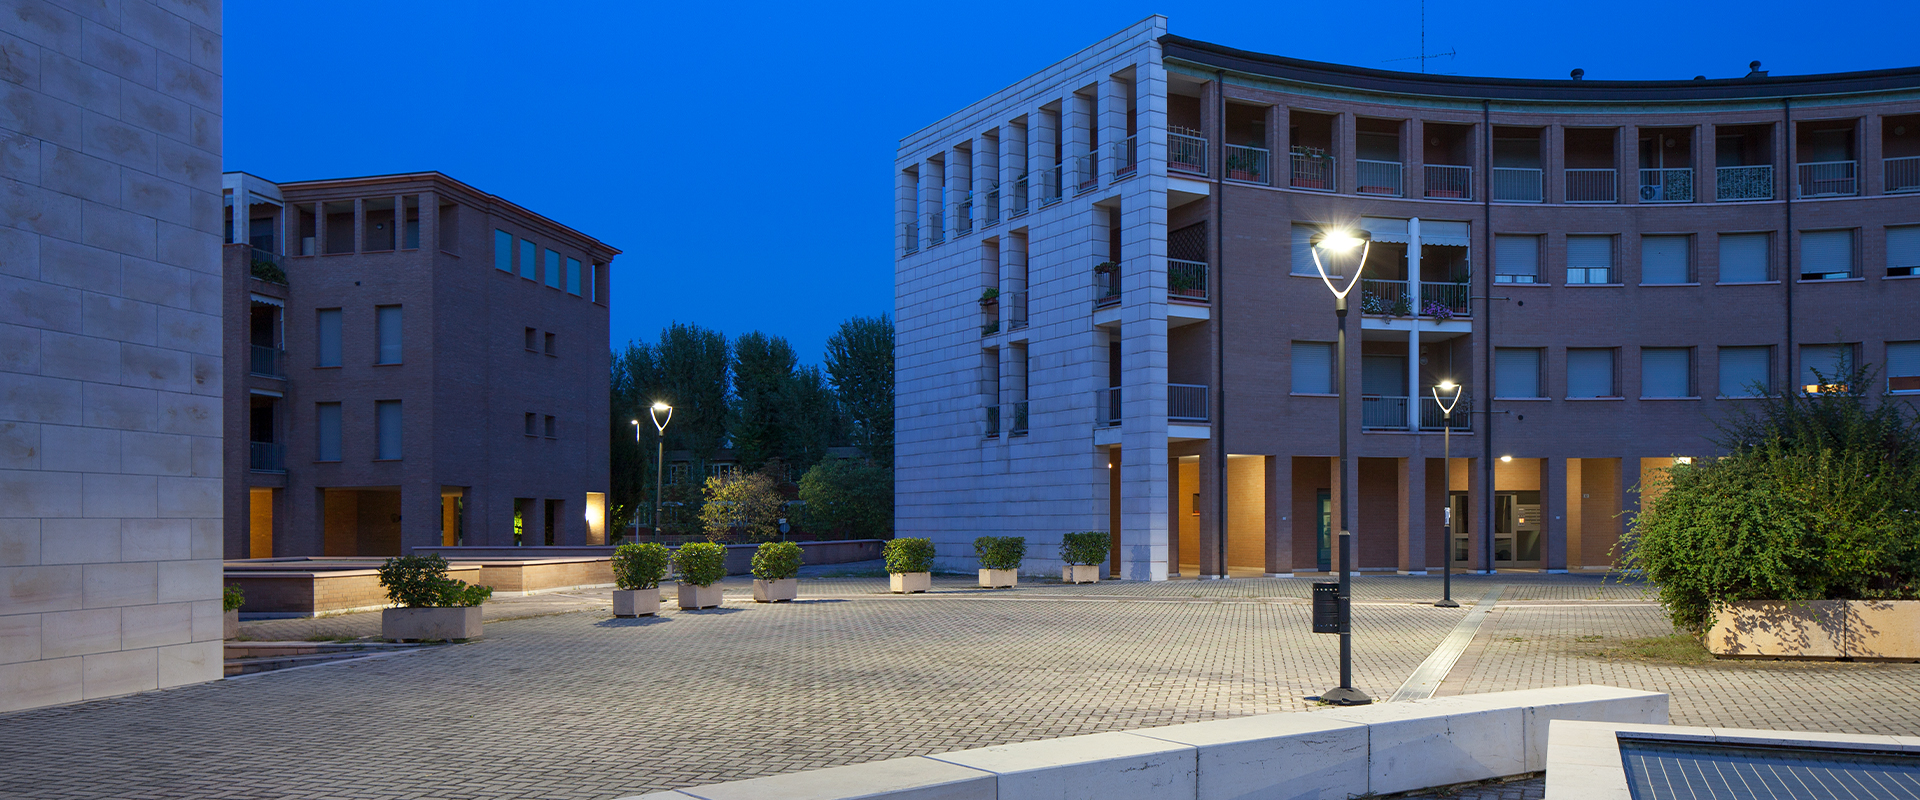 Illuminazione pubblica a LED della città di Modena